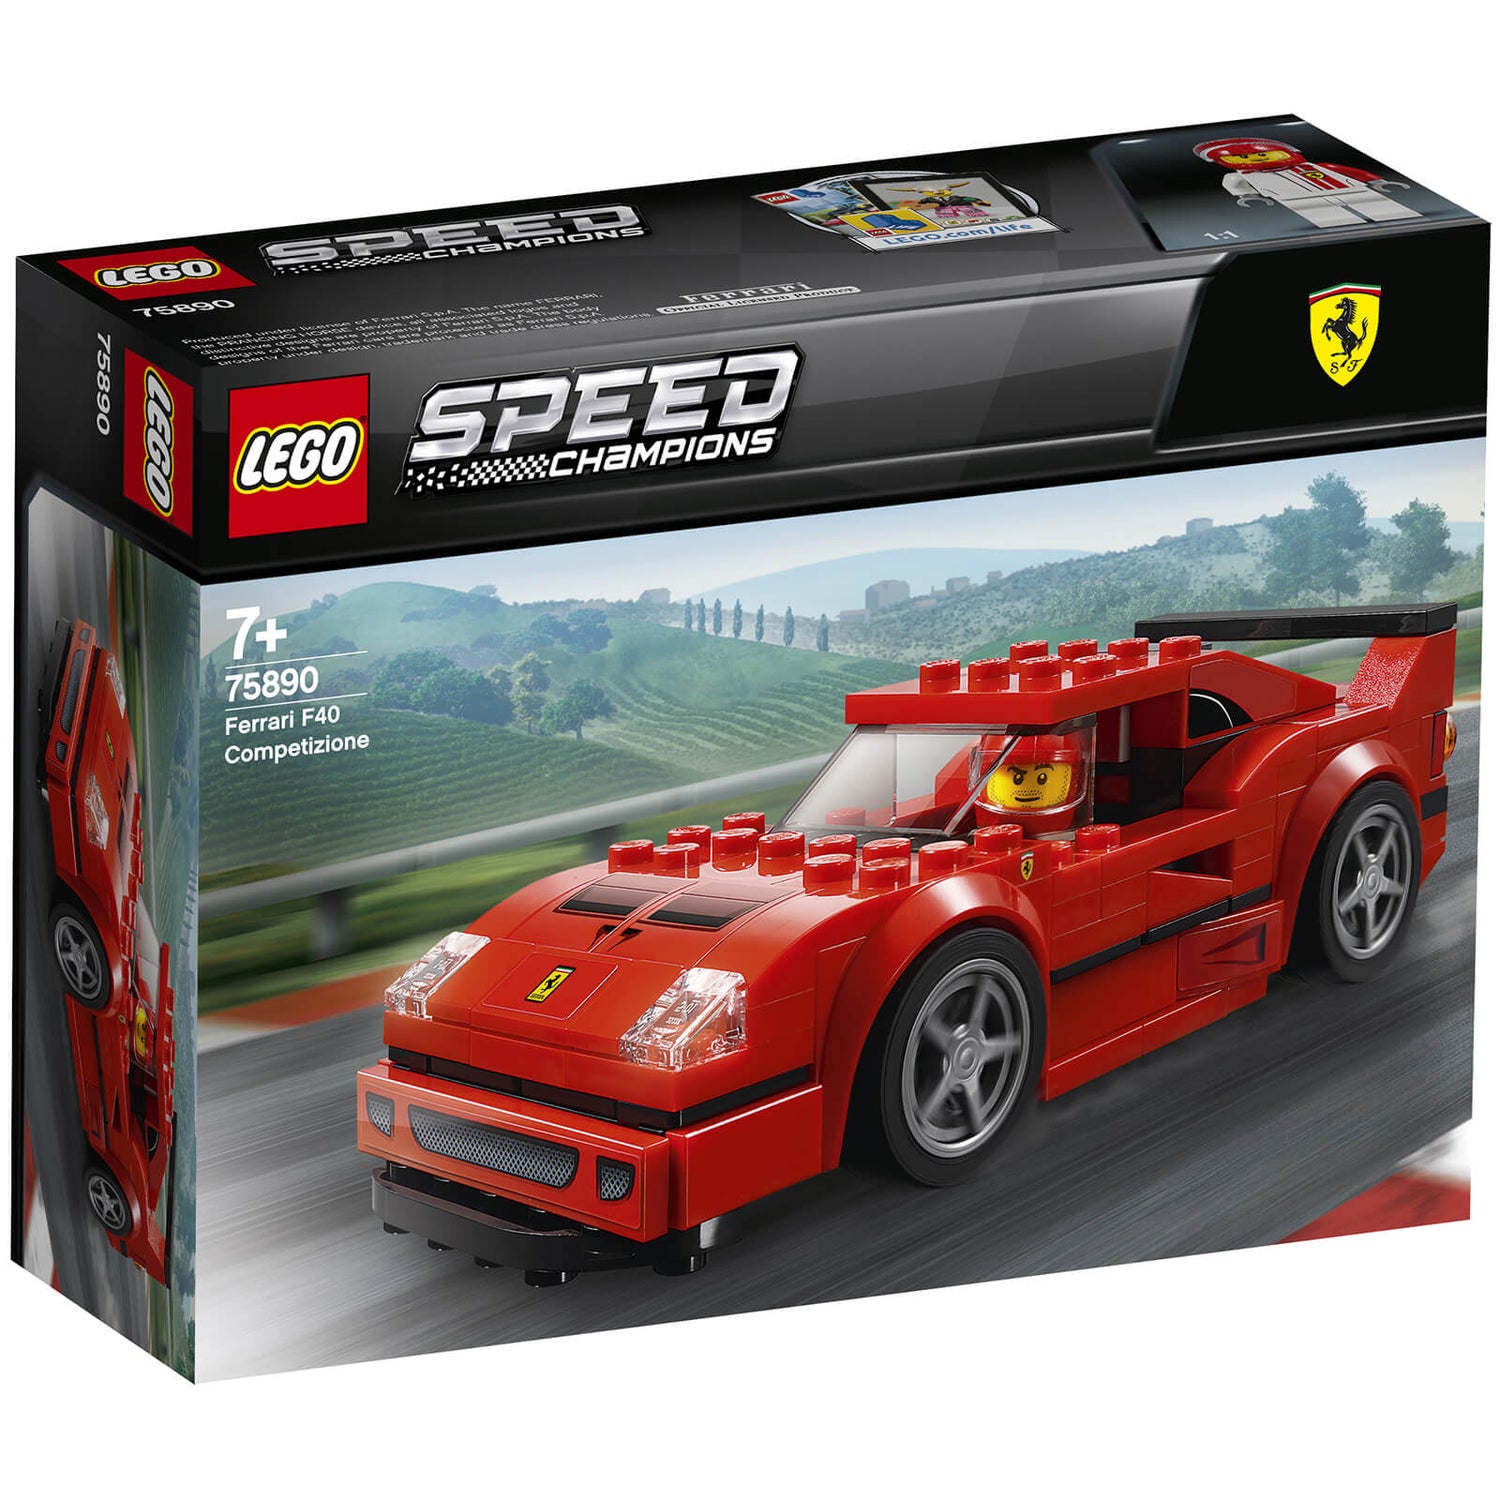 Gespierd motto naald LEGO Ferrari F40 Competizione modelauto speelgoed (75890) | Zavvi.nl